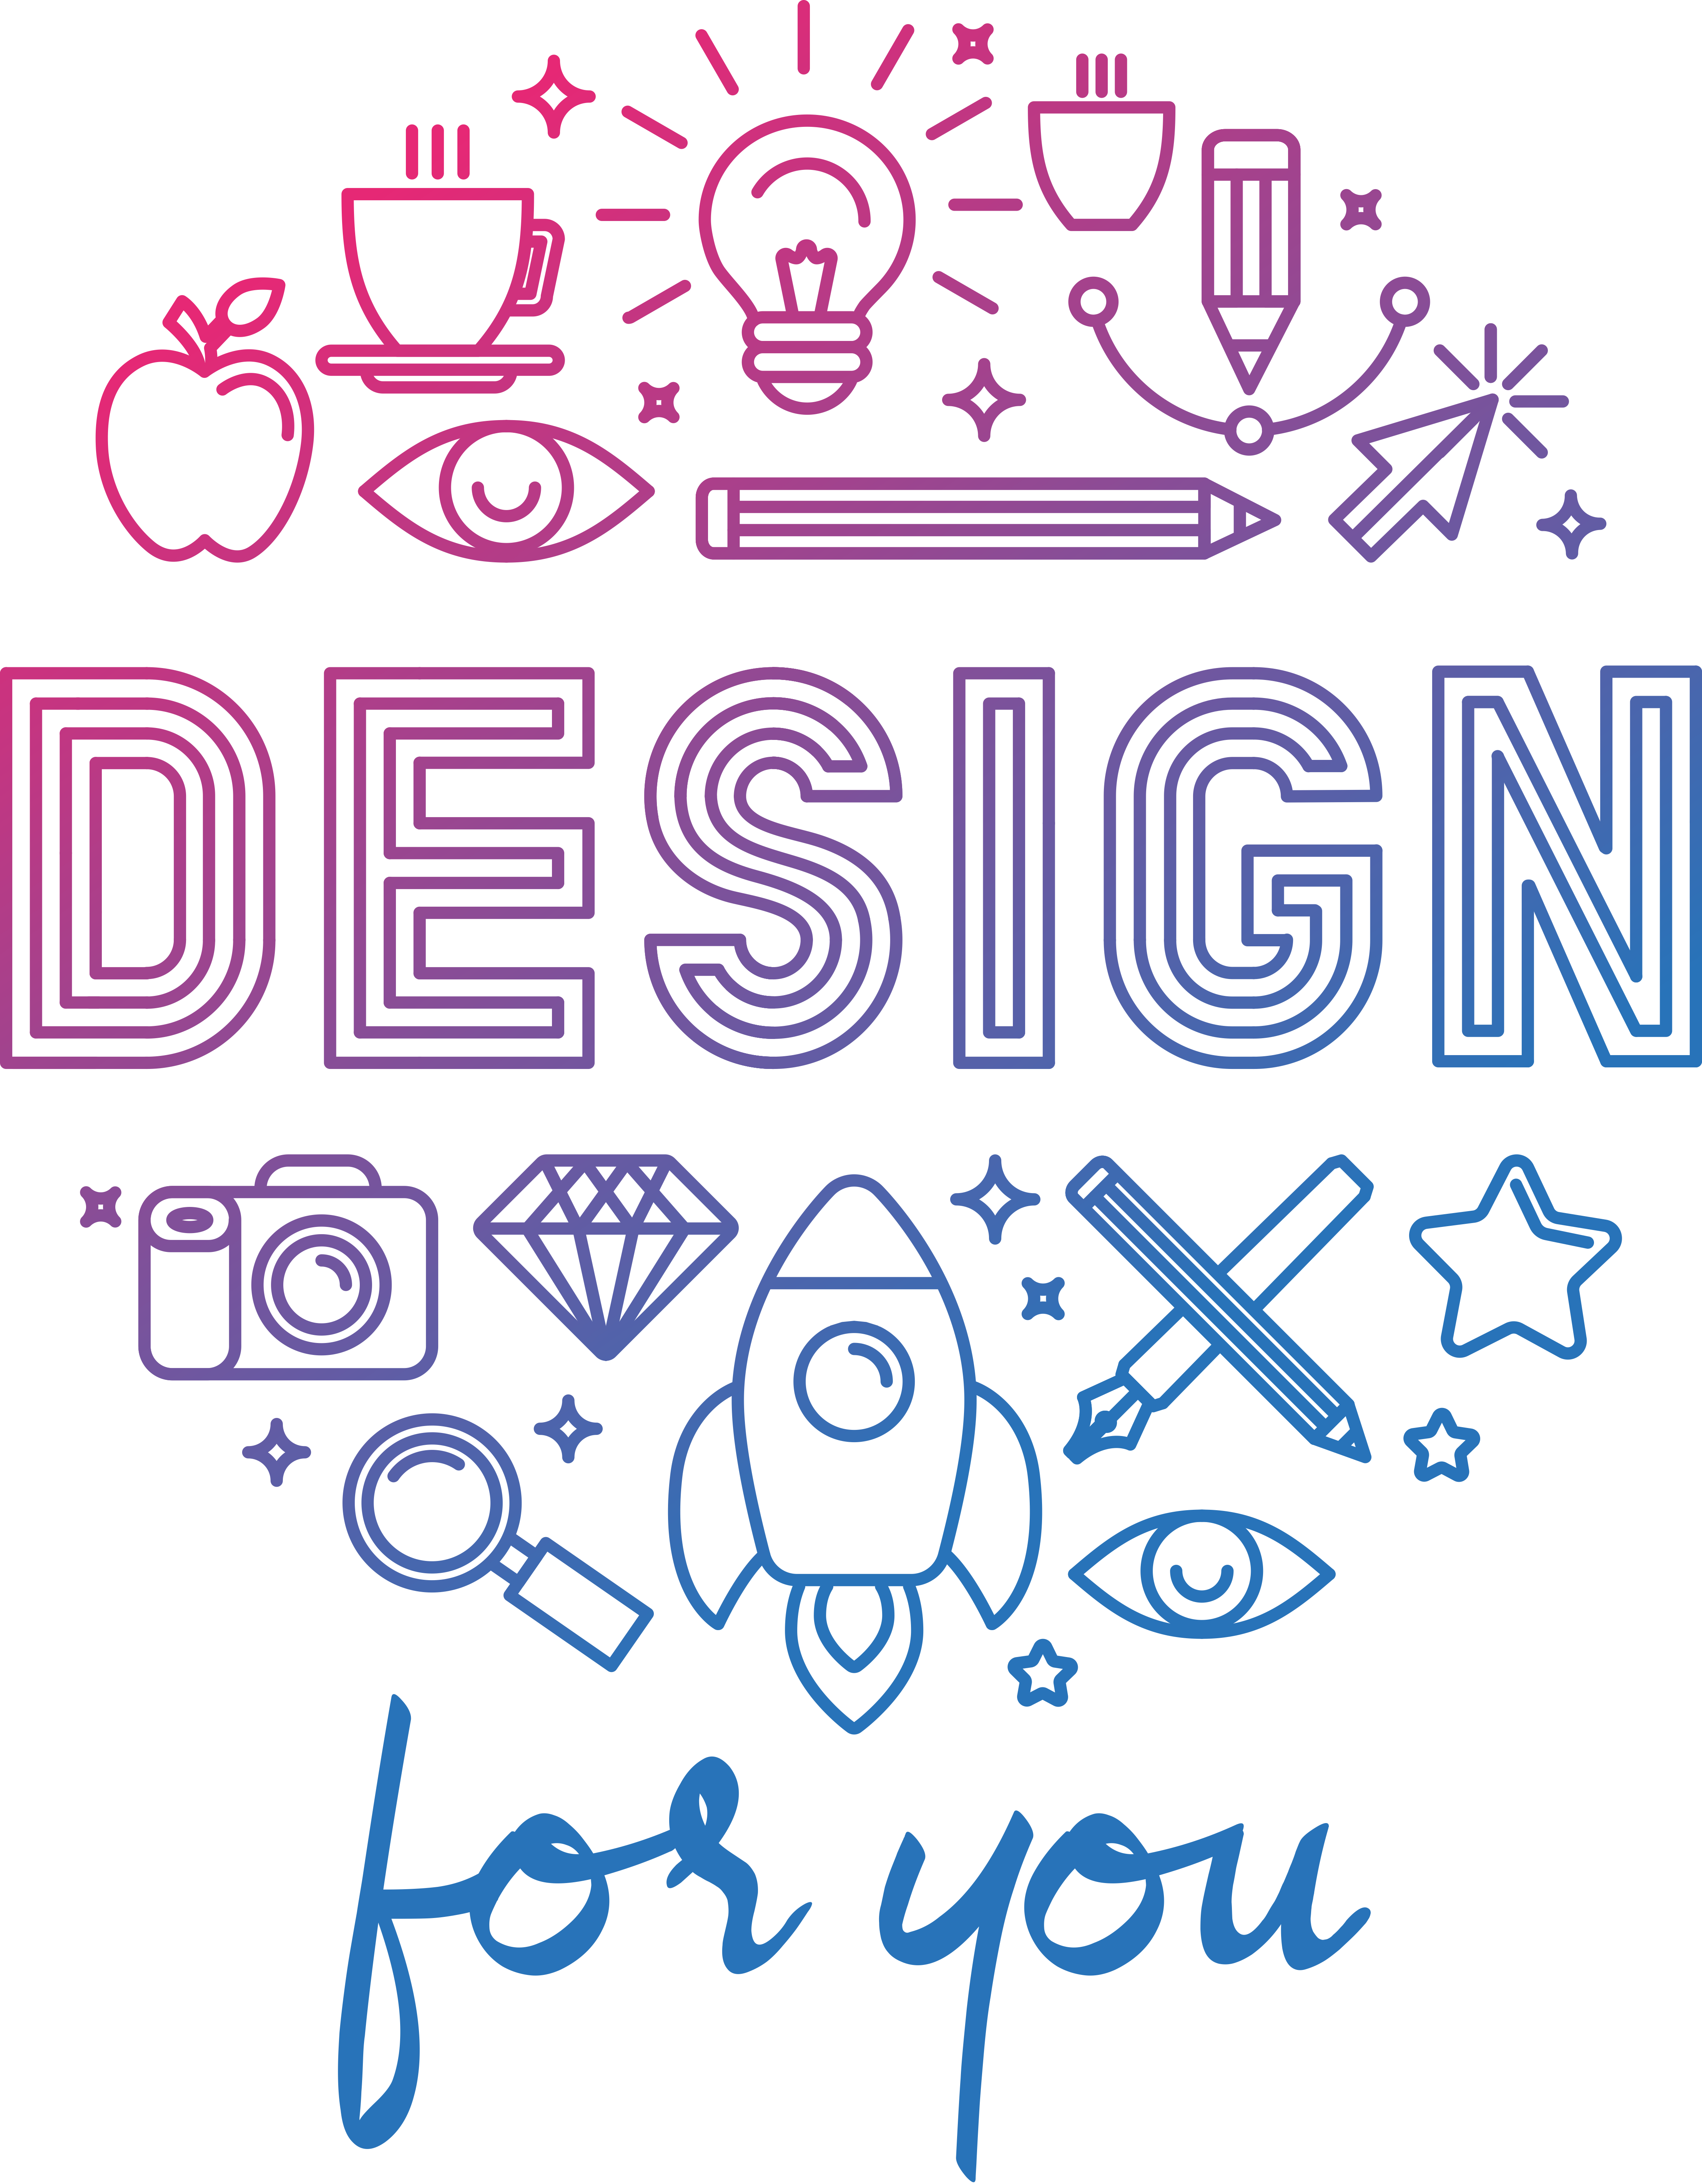 Graphics logo. Логотип графического дизайнера. Идеи для логотипа. Дизайнерские эмблемы. Графические логотипы.